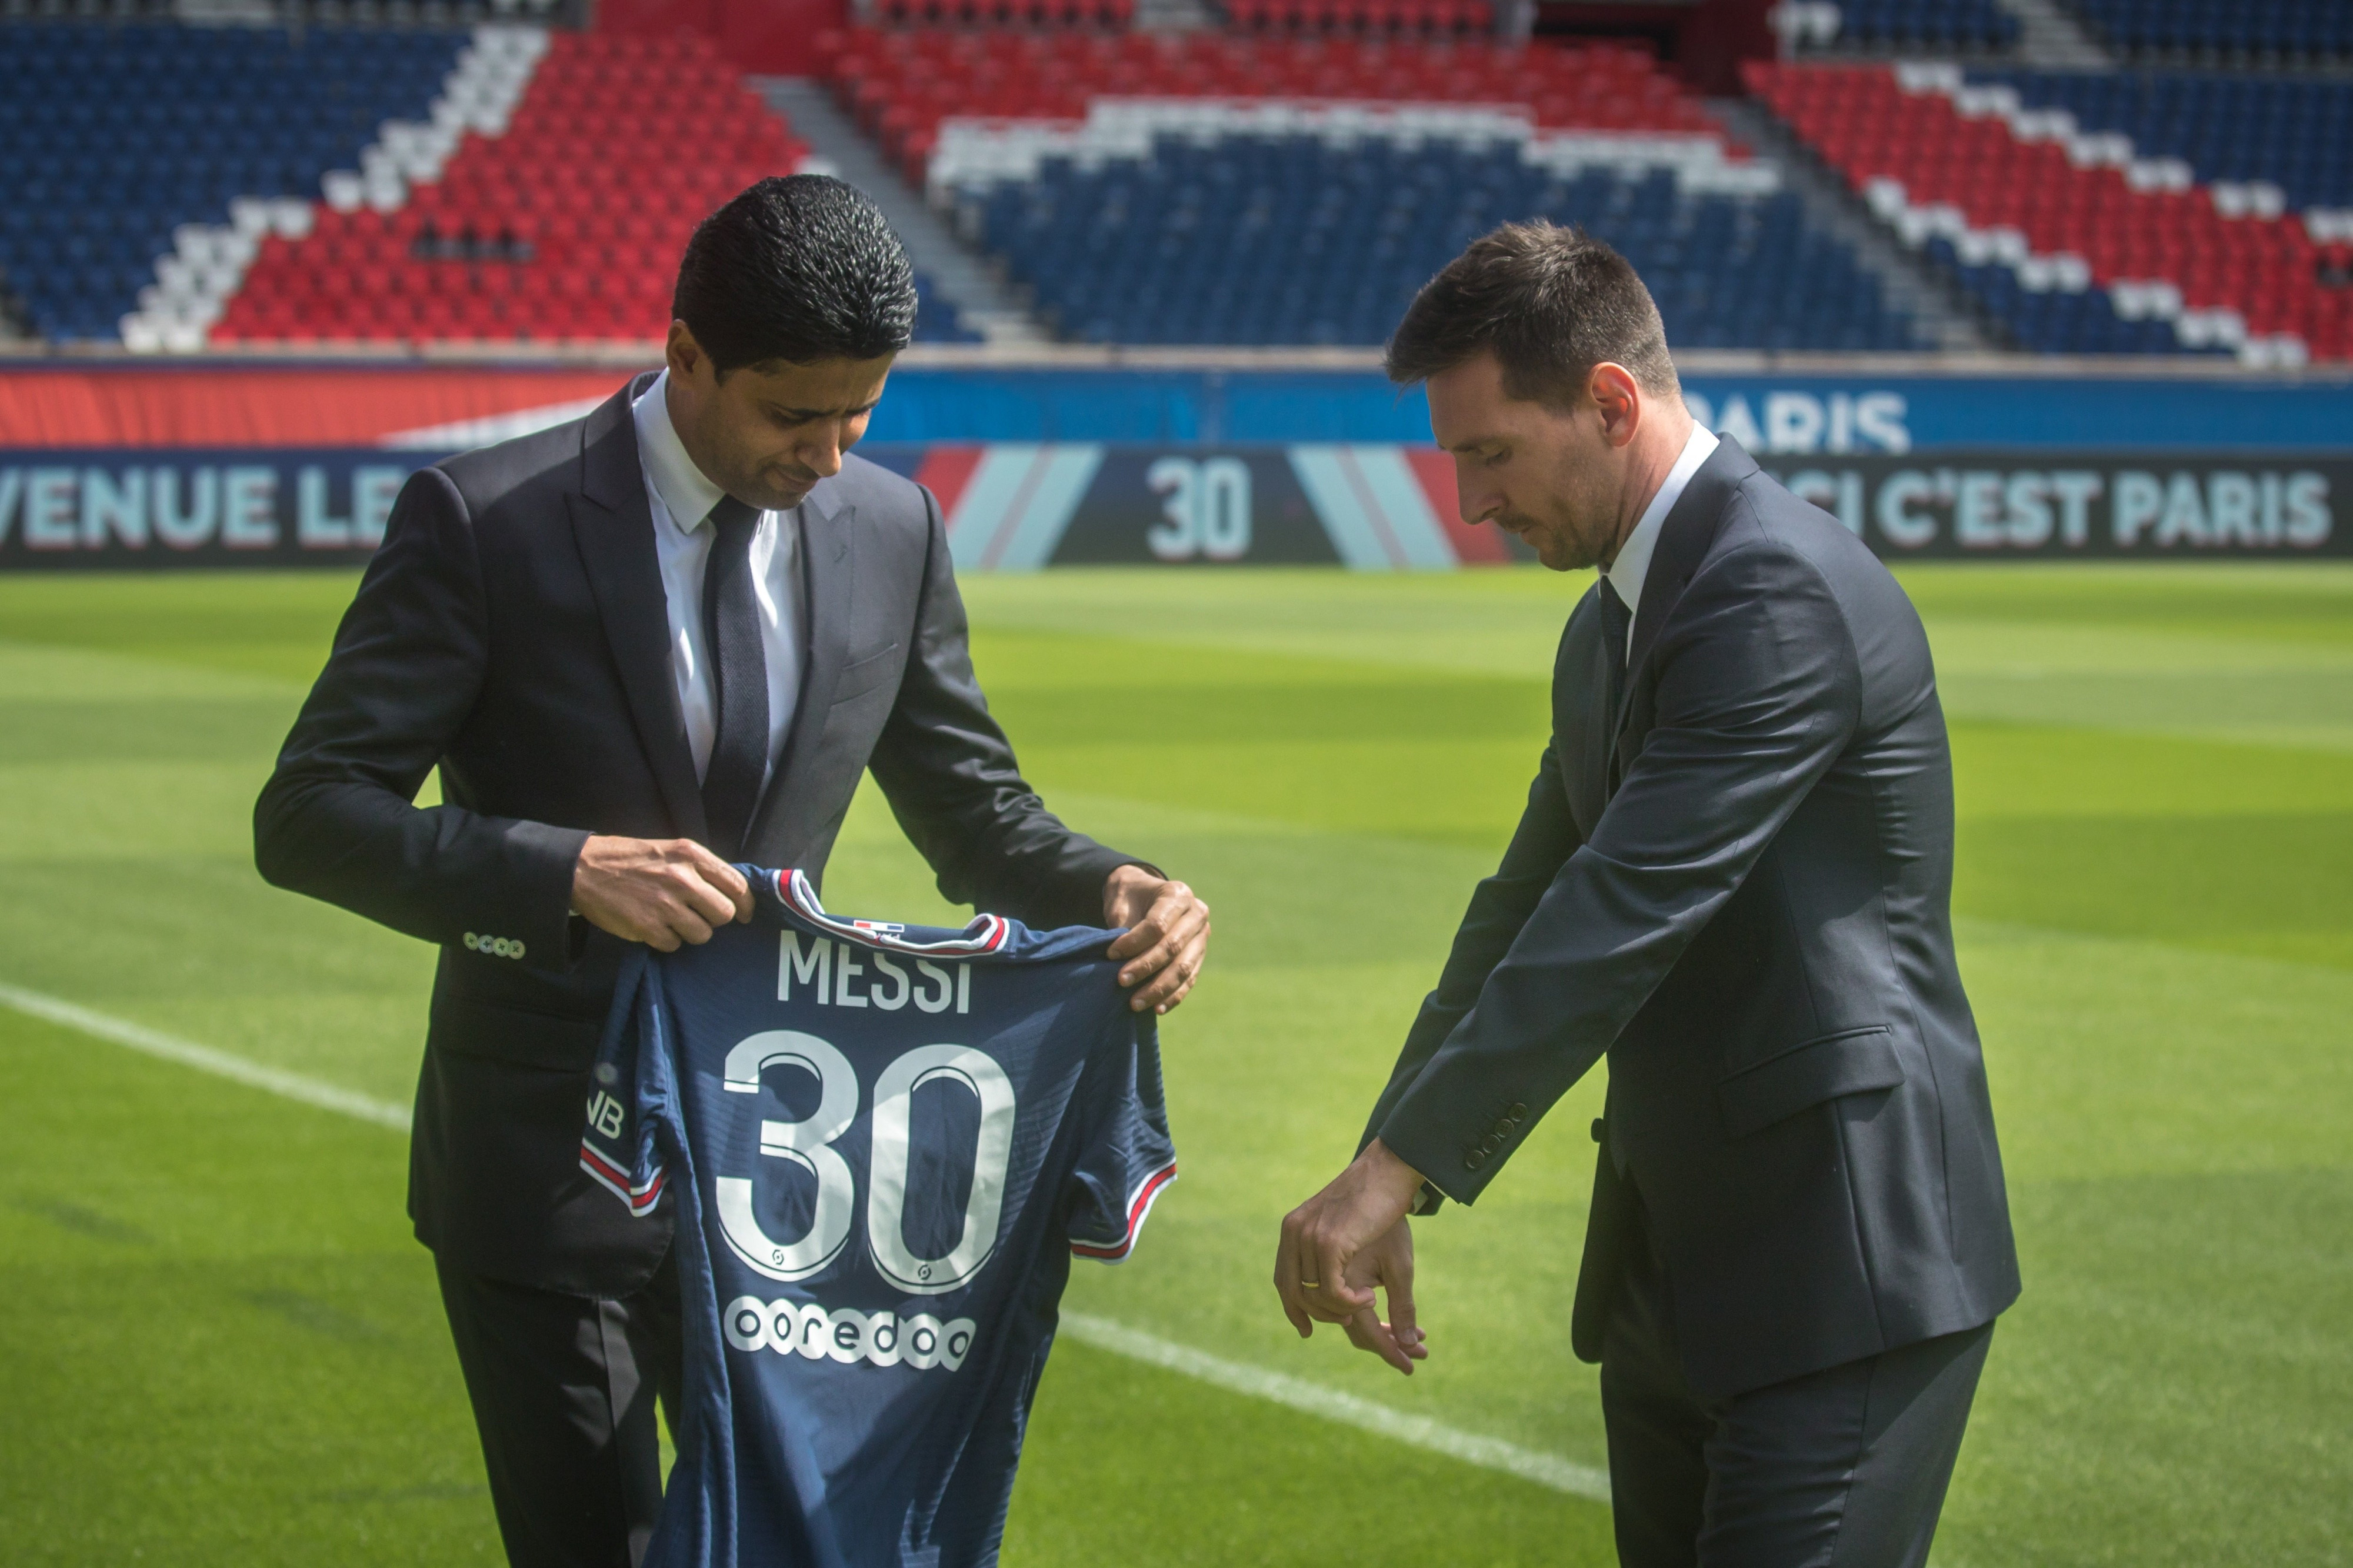 Al-Khelaifi y Messi presentado en el Parc des Princes / EFE